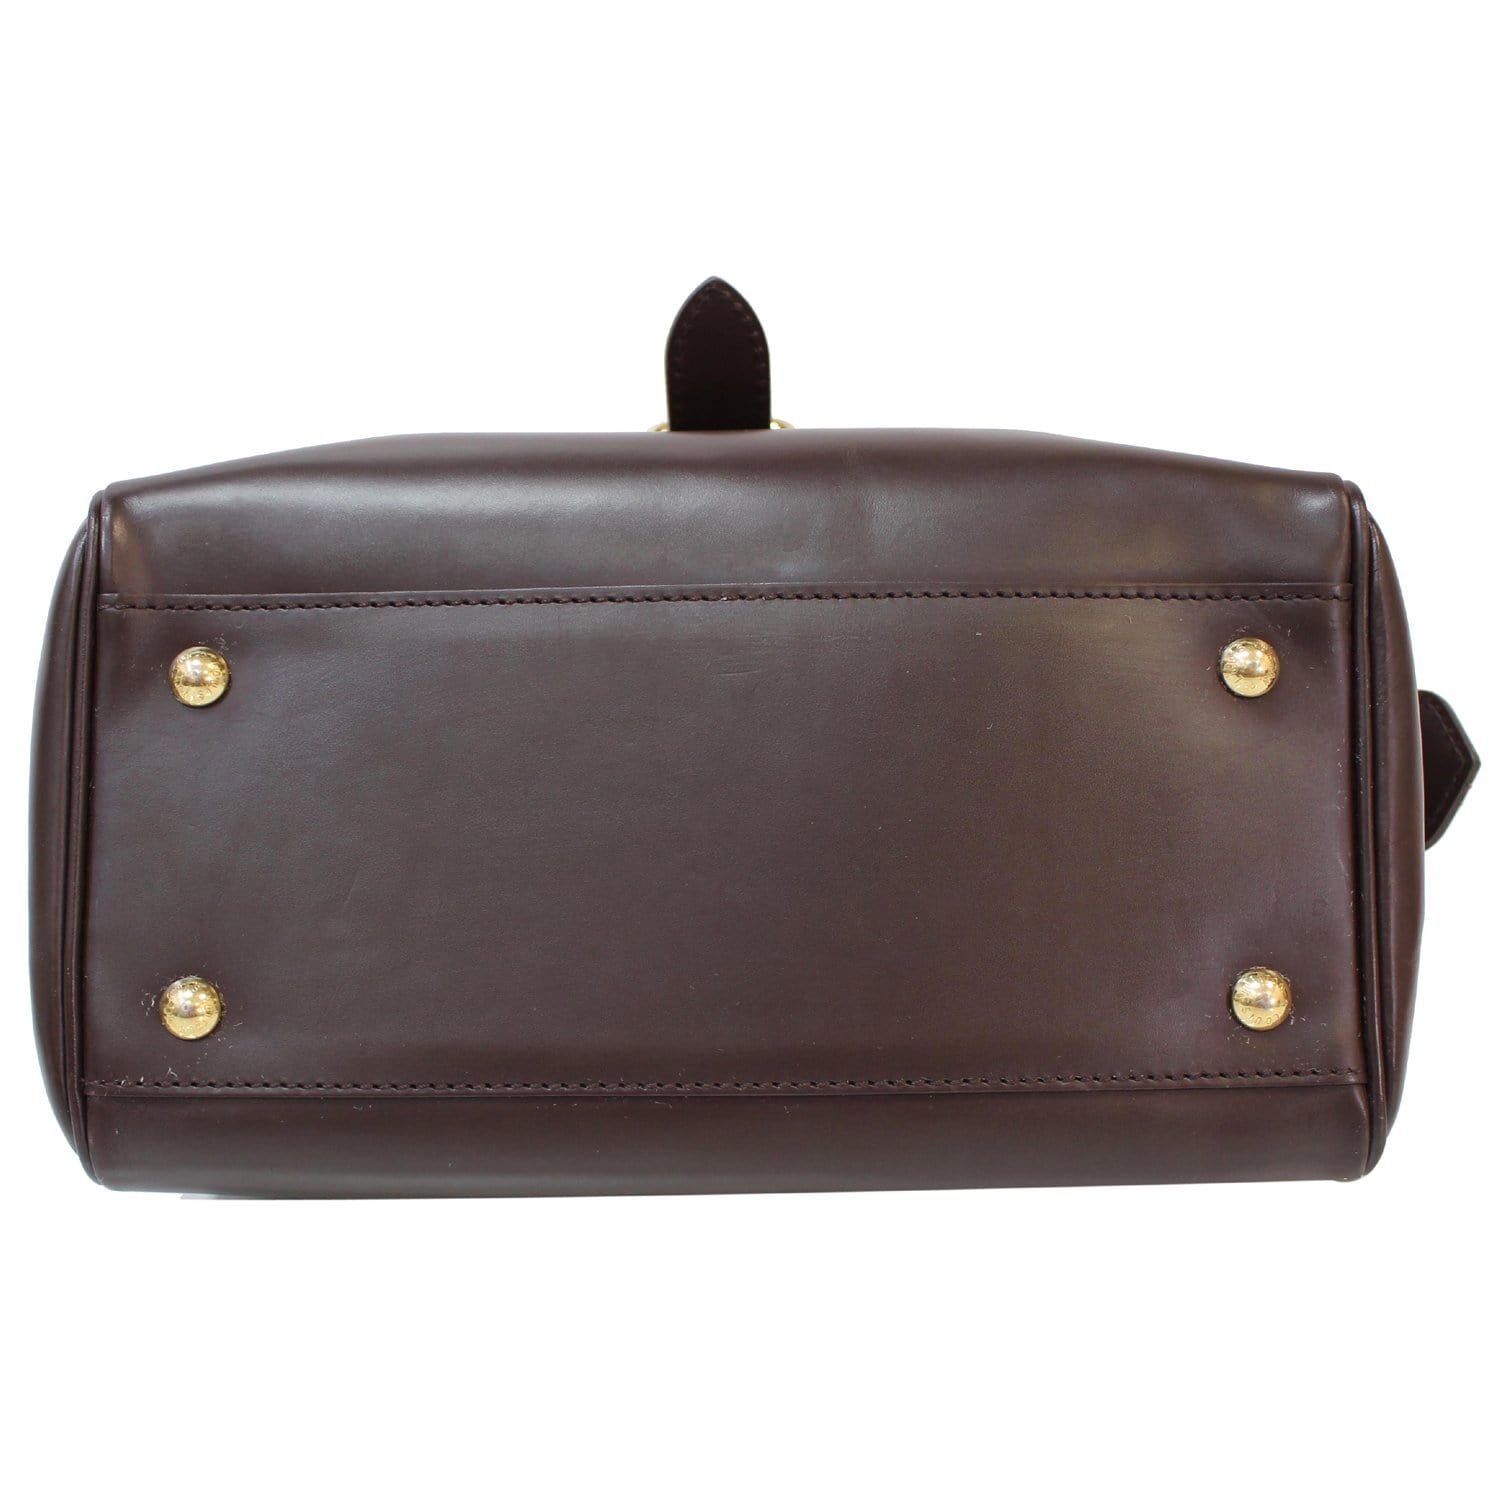 Louis Vuitton Damier Ebene Knightsbridge Bag In Brown